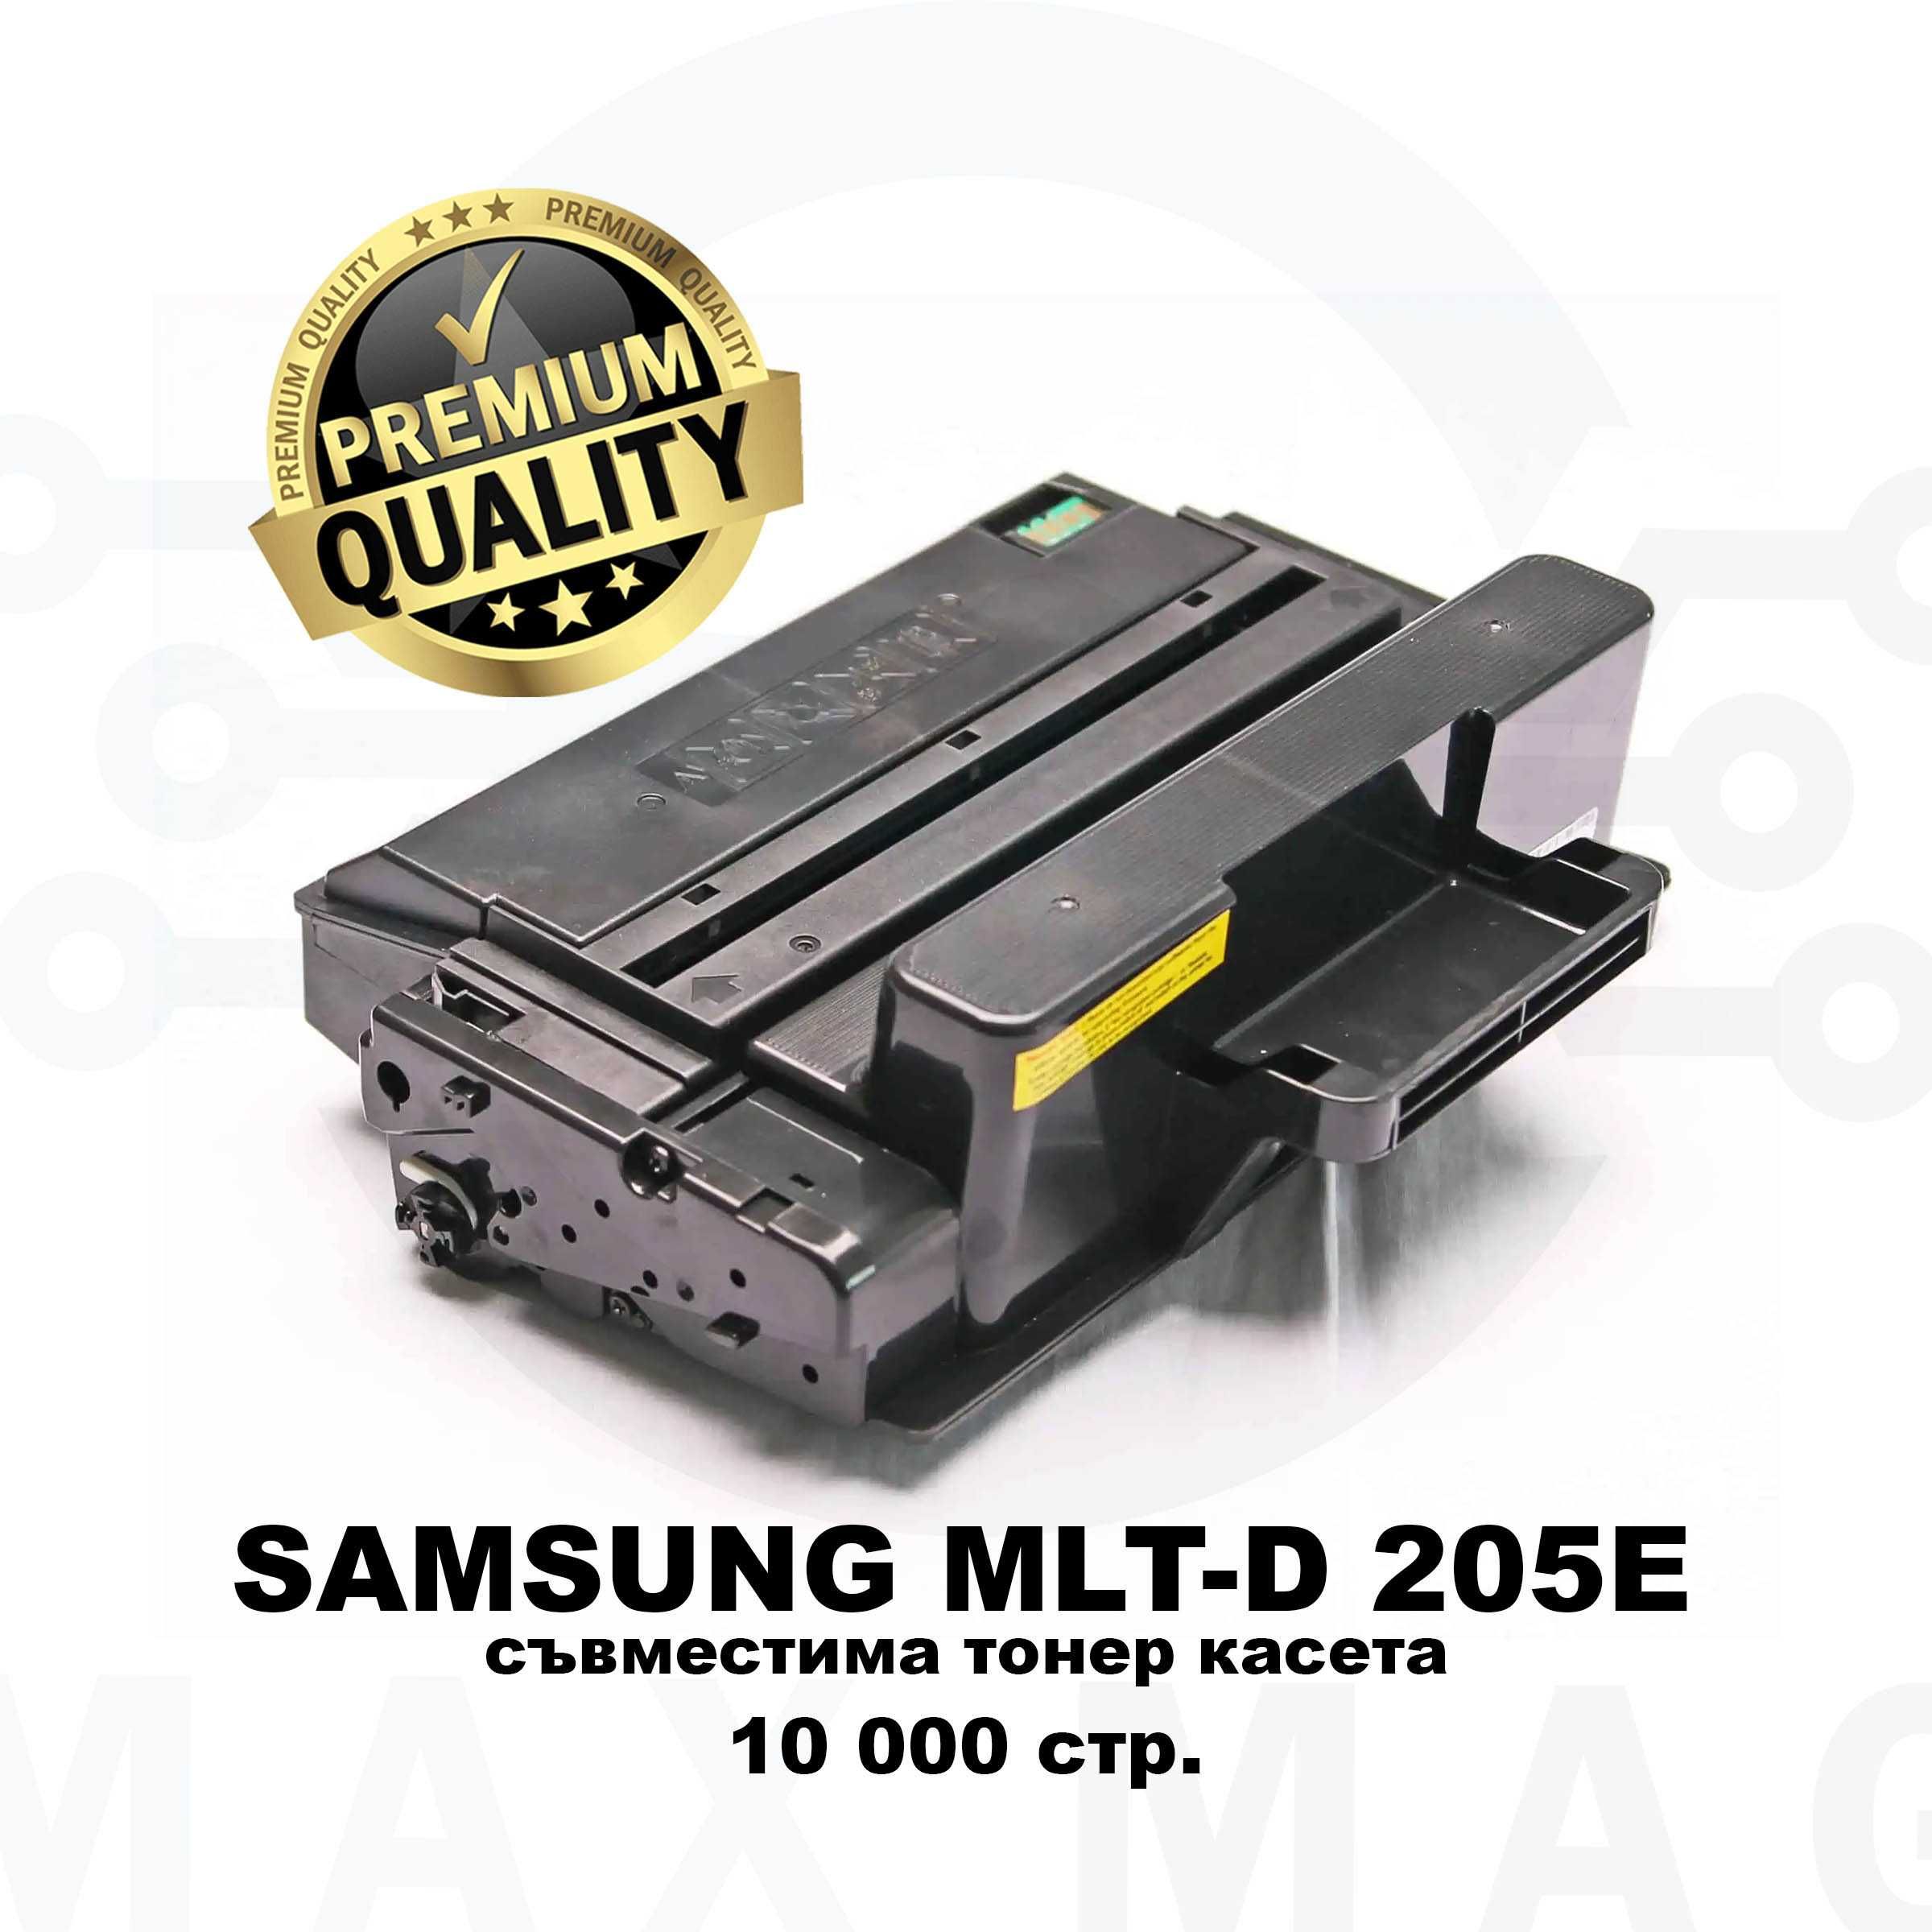 Samsung MLT-D205E PREMIUM - Съвместима тонер касета